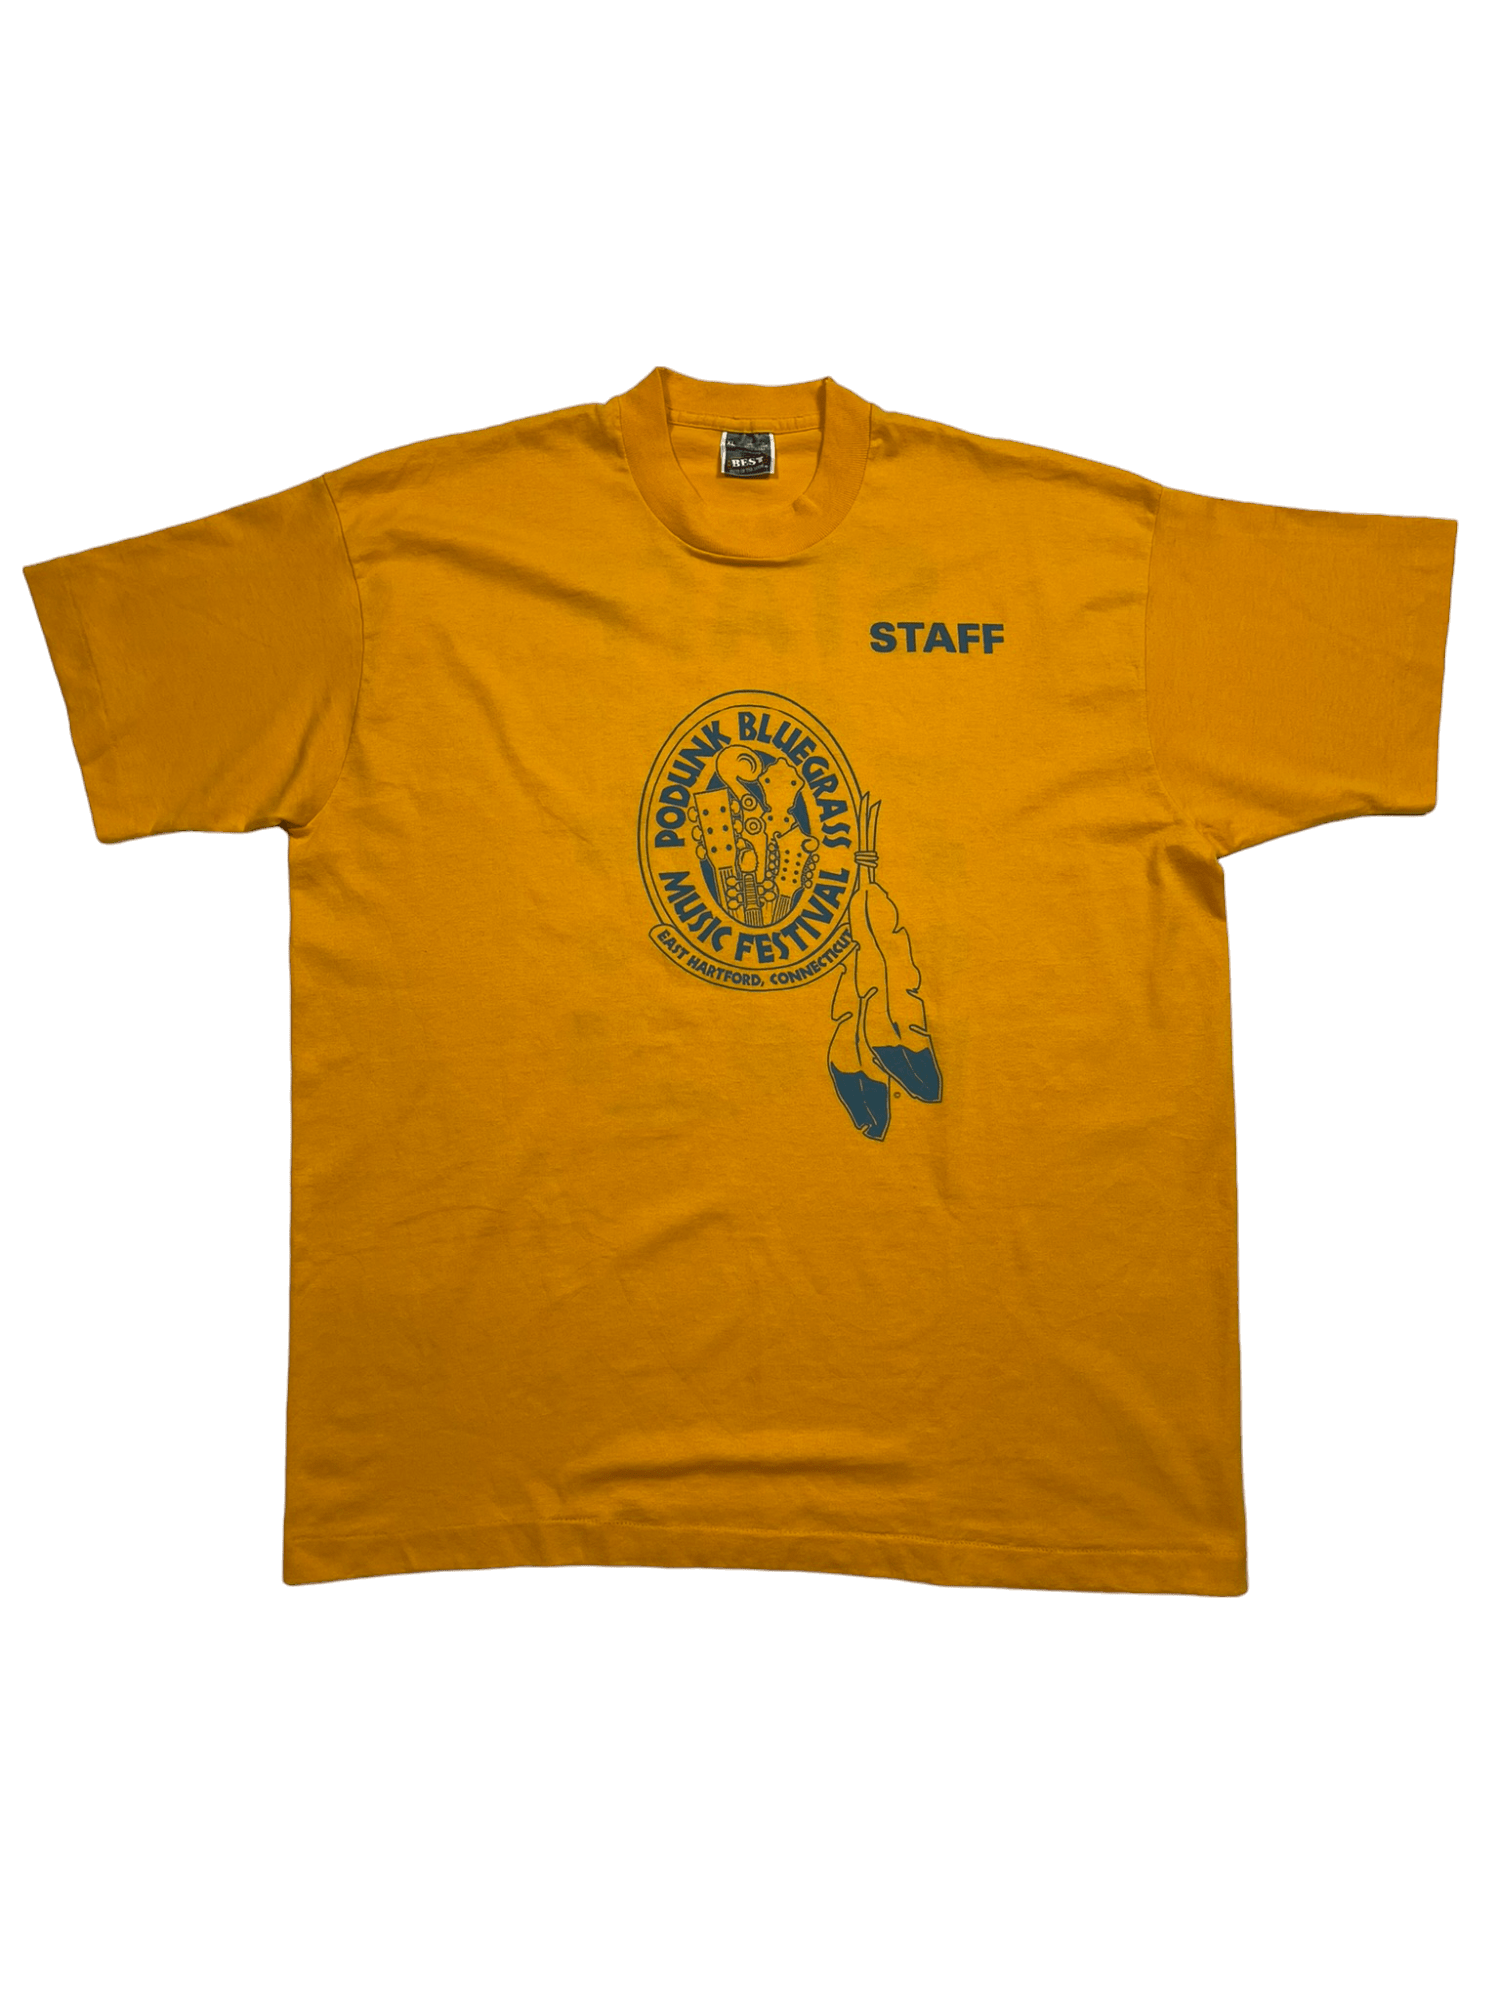 The Vintage Racks T-Shirt Podunk Bluegrass Music Festival - XL